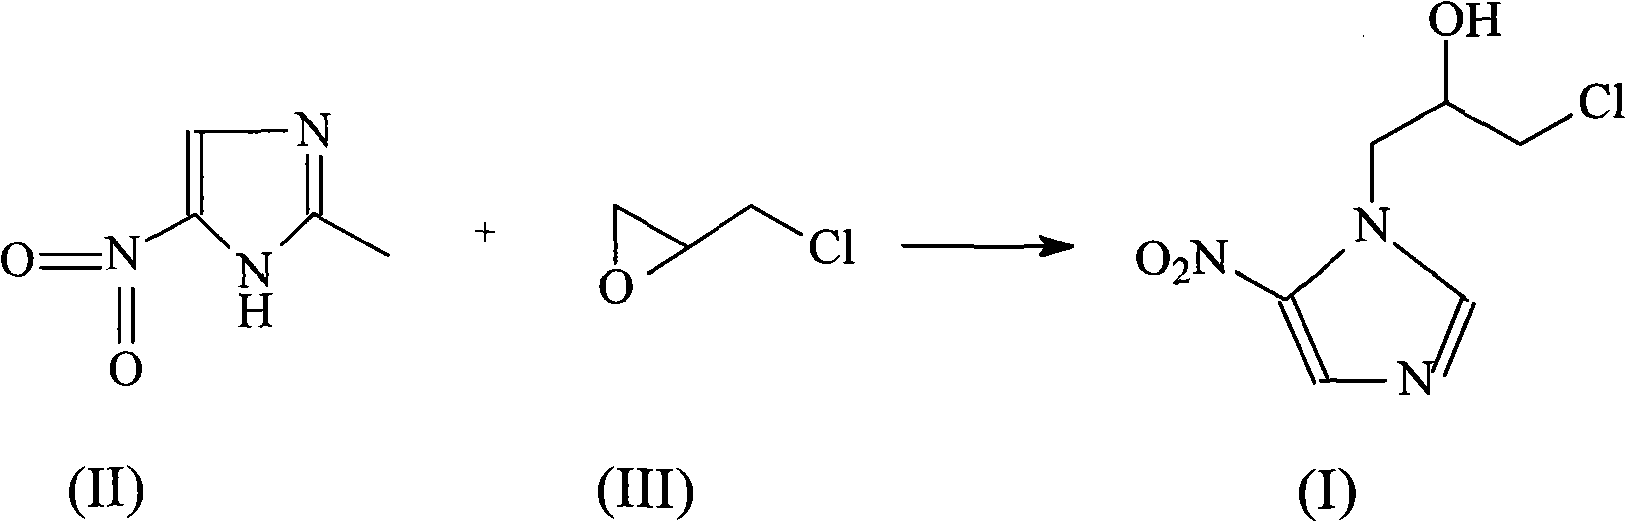 Ornidazole compound in new path